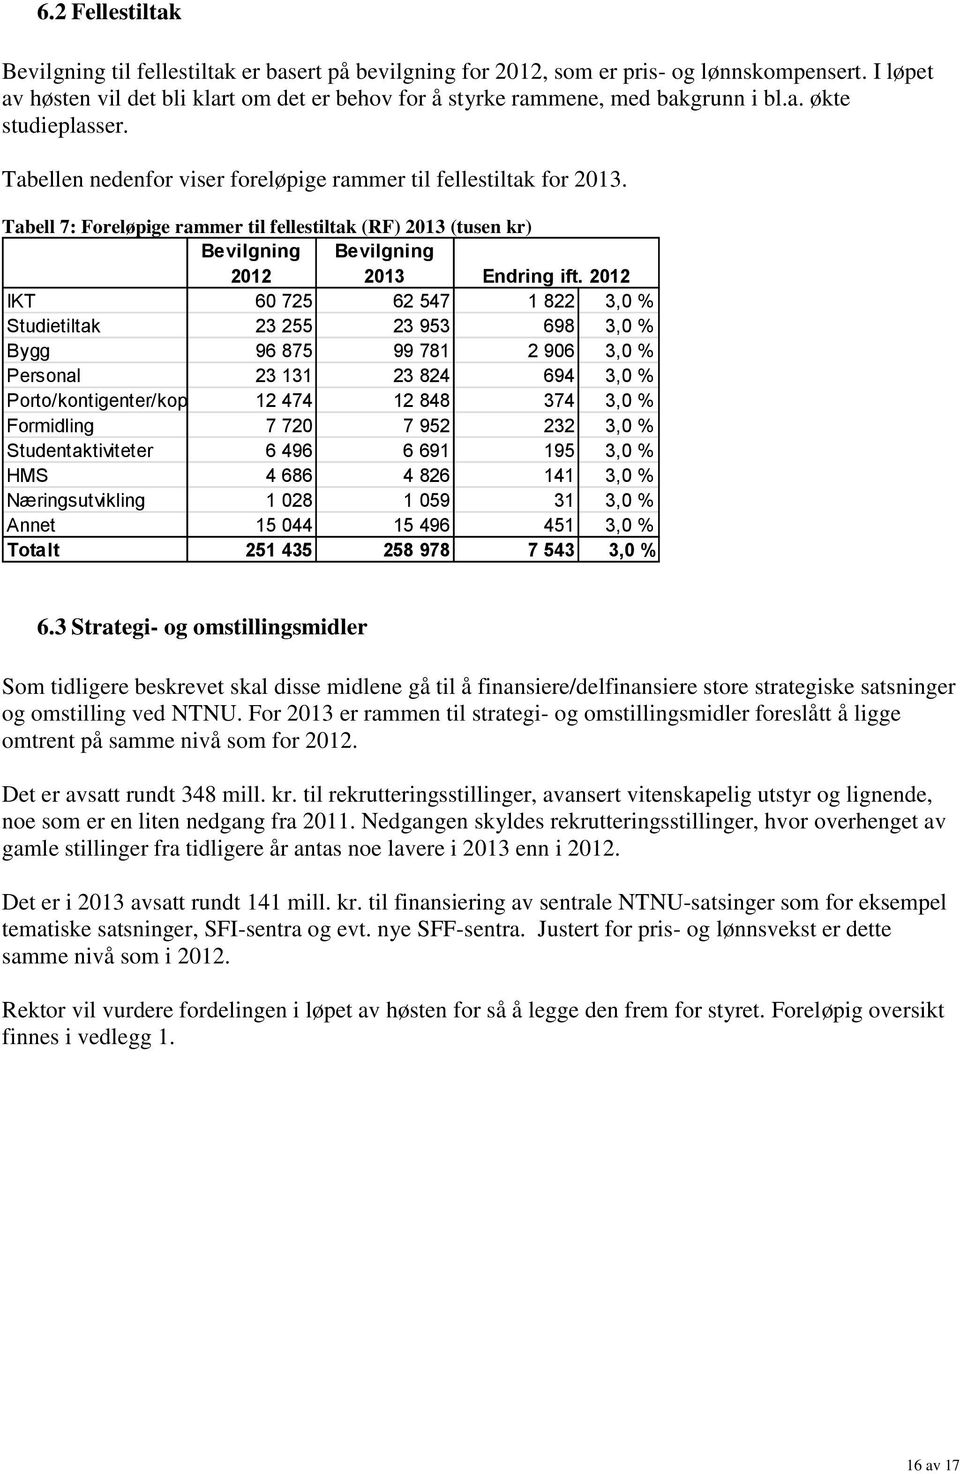 Tabell 7: Foreløpige rammer til fellestiltak (RF) 2013 (tusen kr) Bevilgning 2012 Bevilgning 2013 Endring ift.